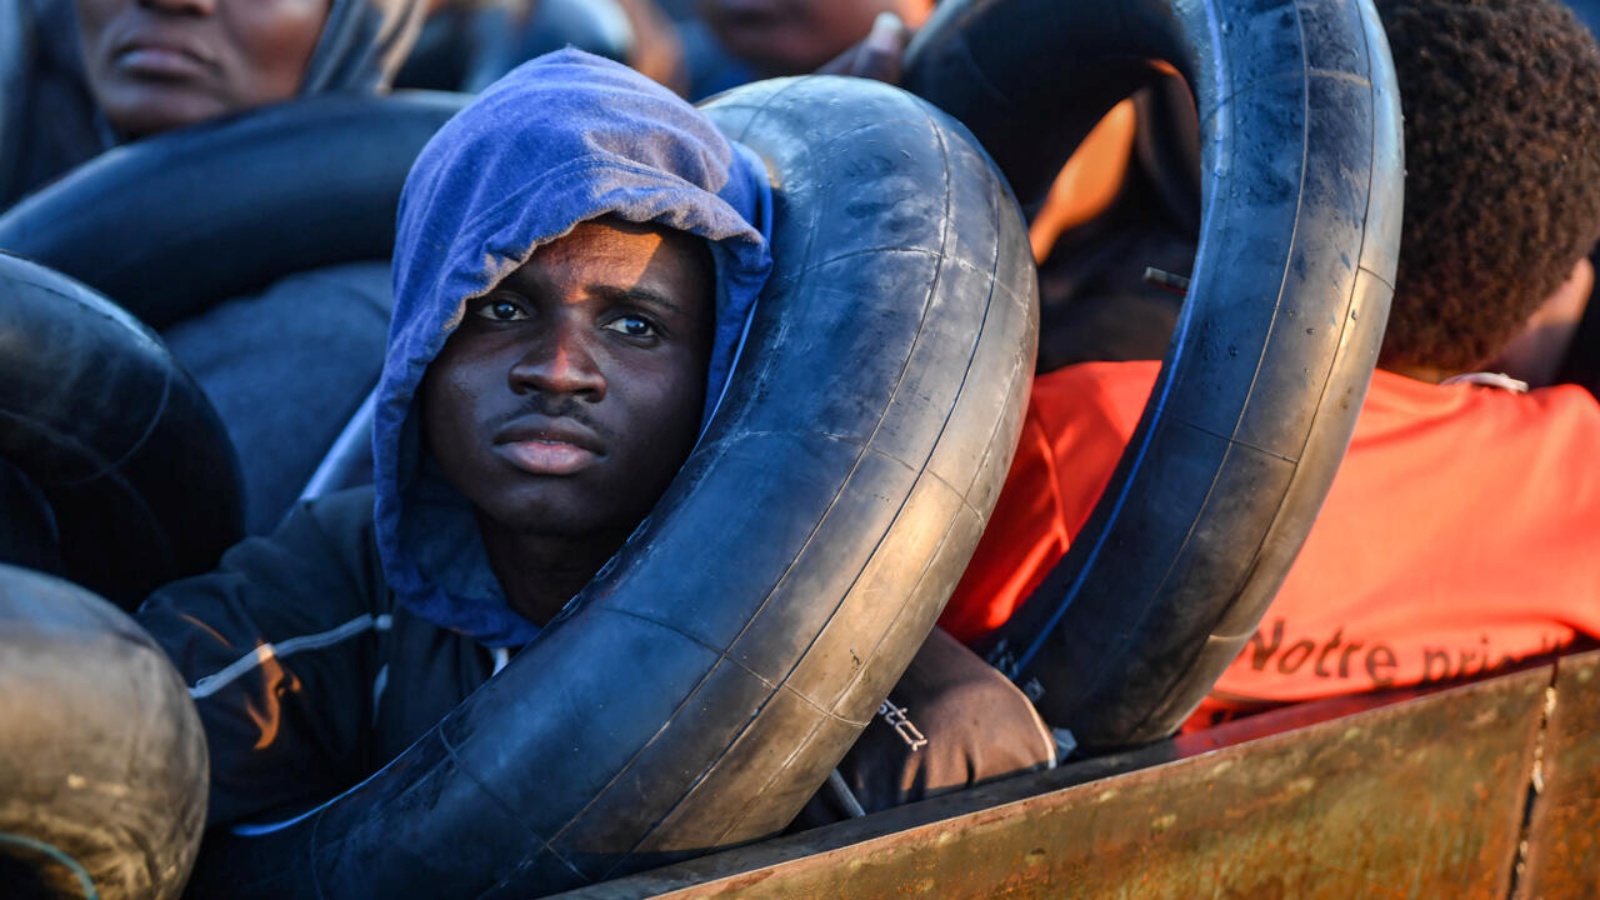 مهاجرون من أفريقيا جنوب الصحراء في قارب متهالك استخدم لتهريبهم نحو الساحل الإيطالي حين اعترضتهم السلطات التونسية قبالة مدينة صفاقس